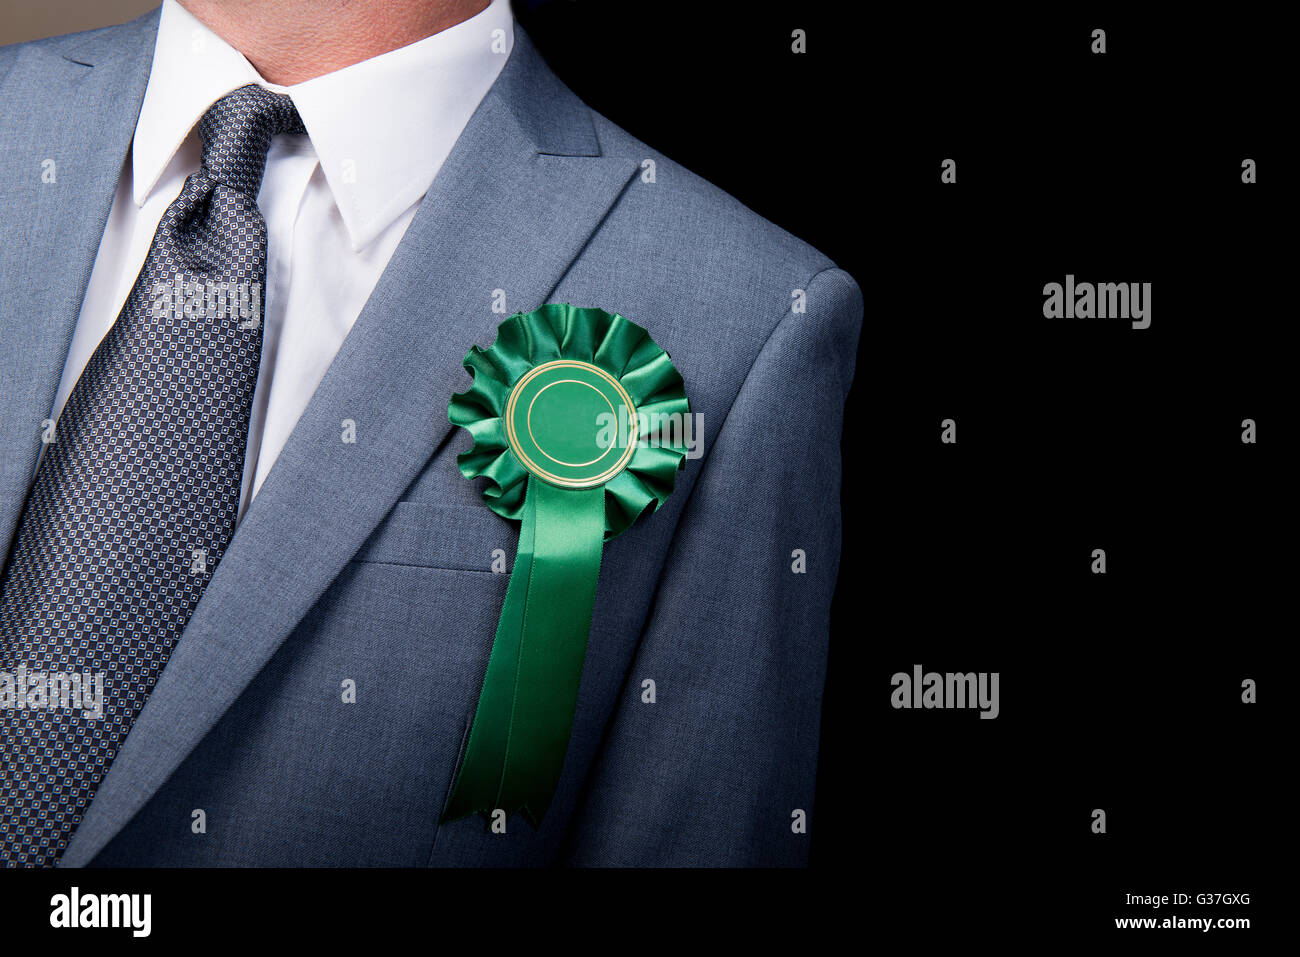 Kopf und Schultern Ansicht des Wahl-Kandidaten tragen eine grüne Rosette vor einem schwarzen Hintergrund. Stockfoto